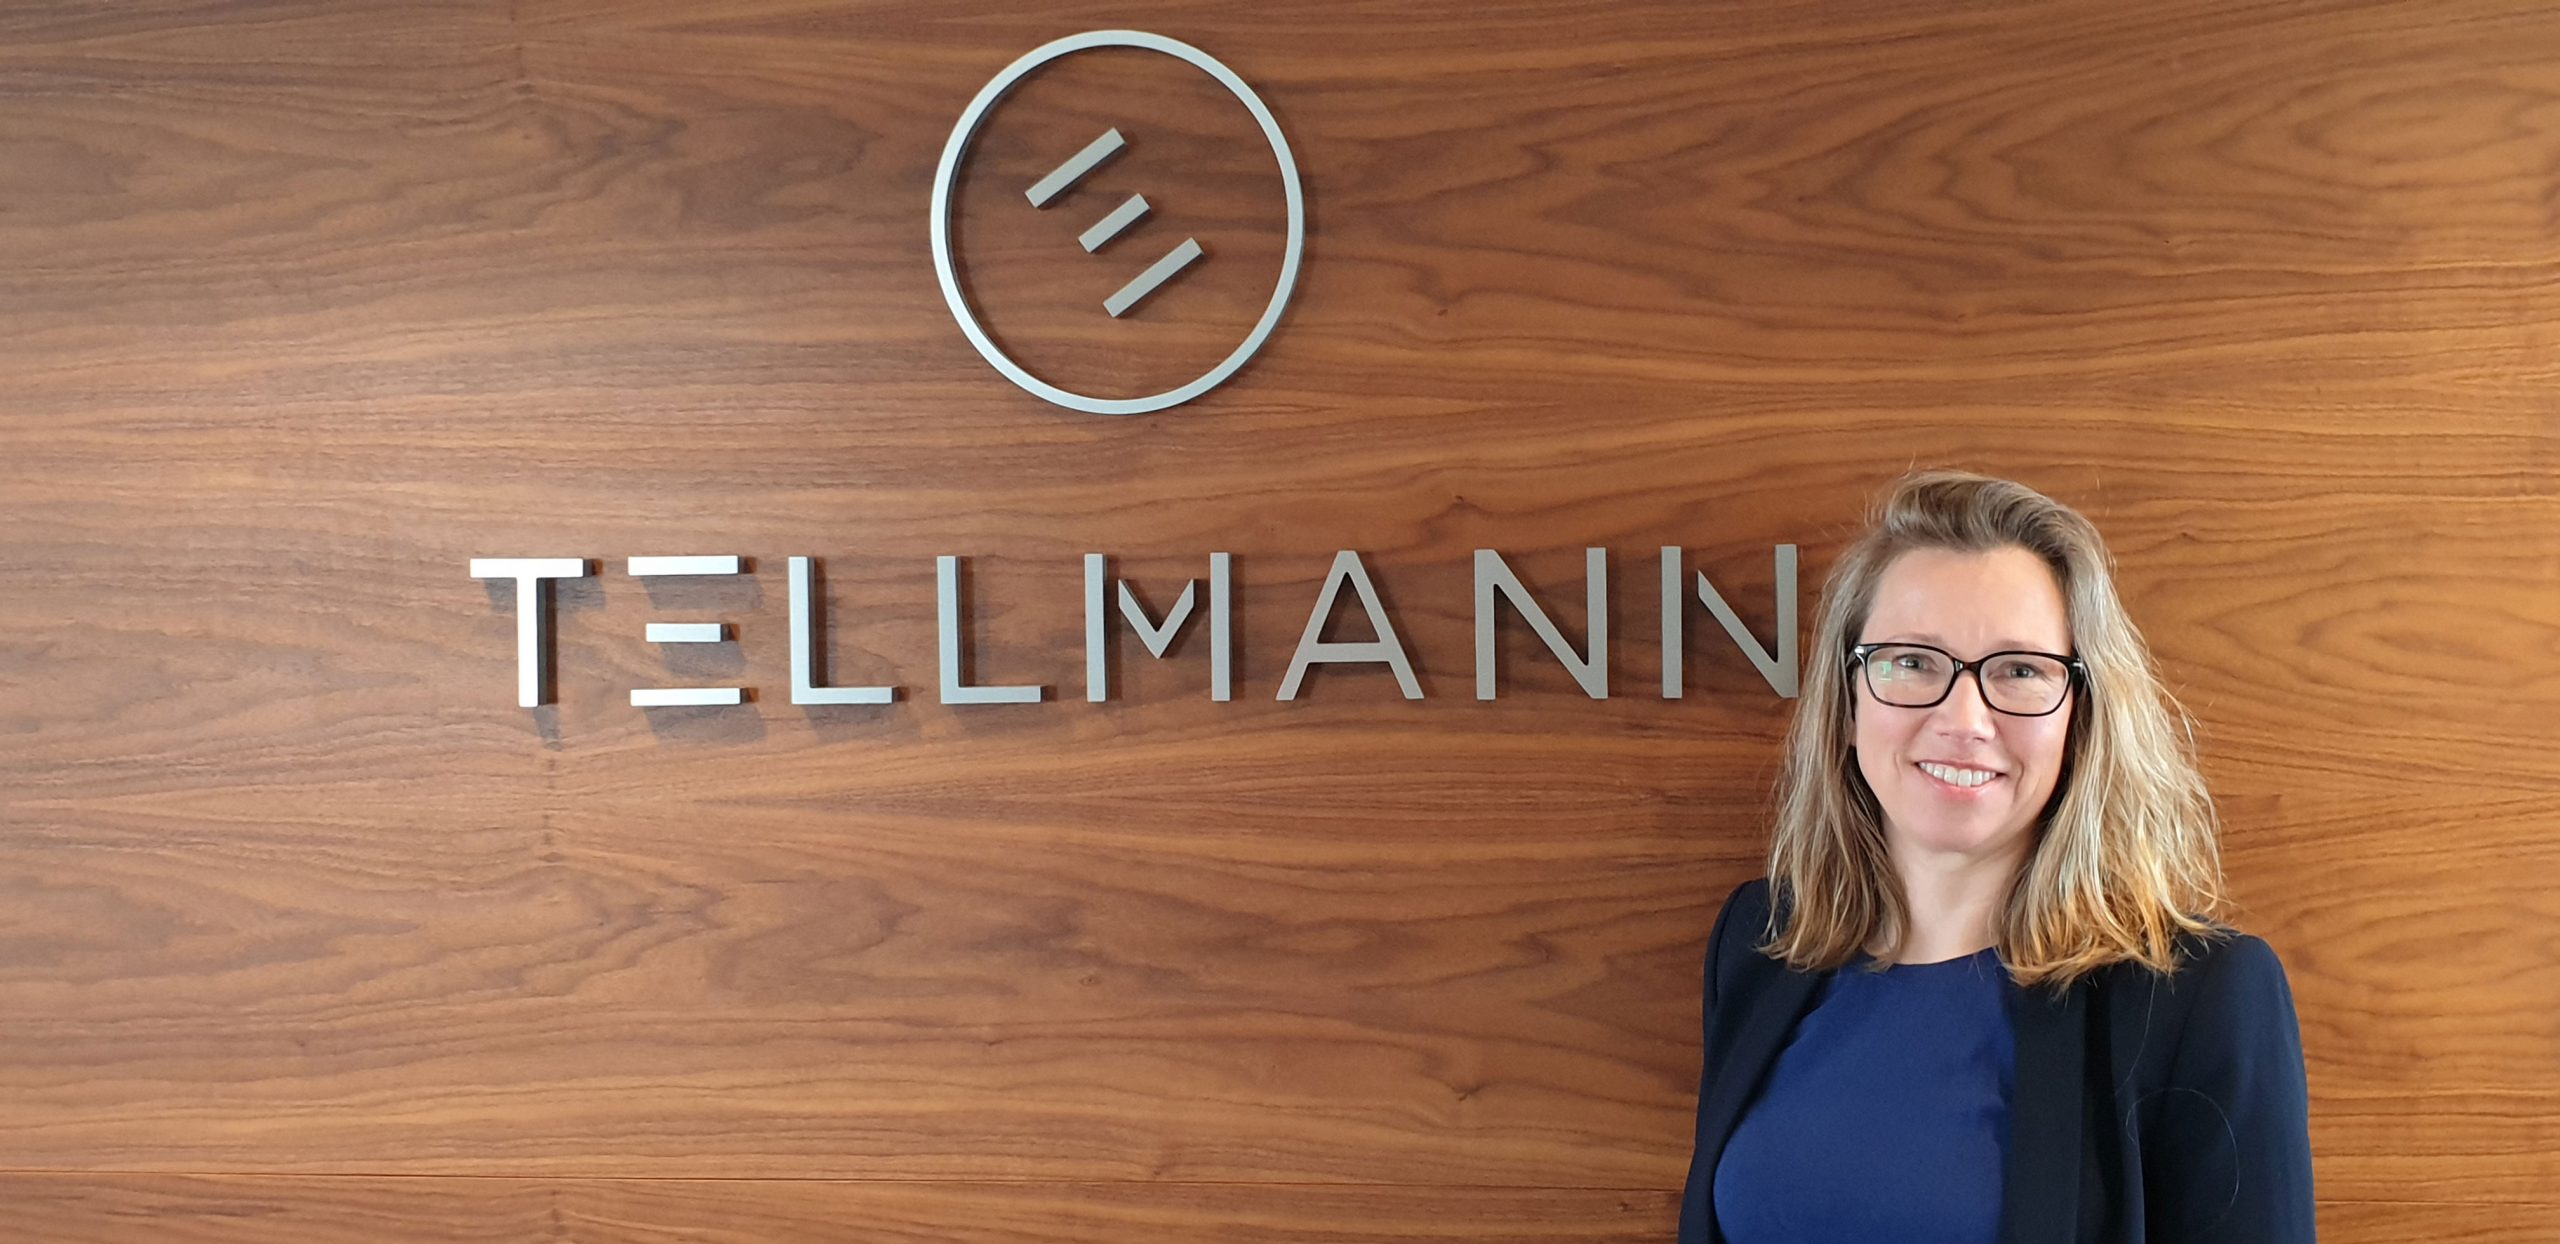 Tellmann utvider og tilfører ytterligere kompetanse innen ledelse, økonomistyring og rapportering